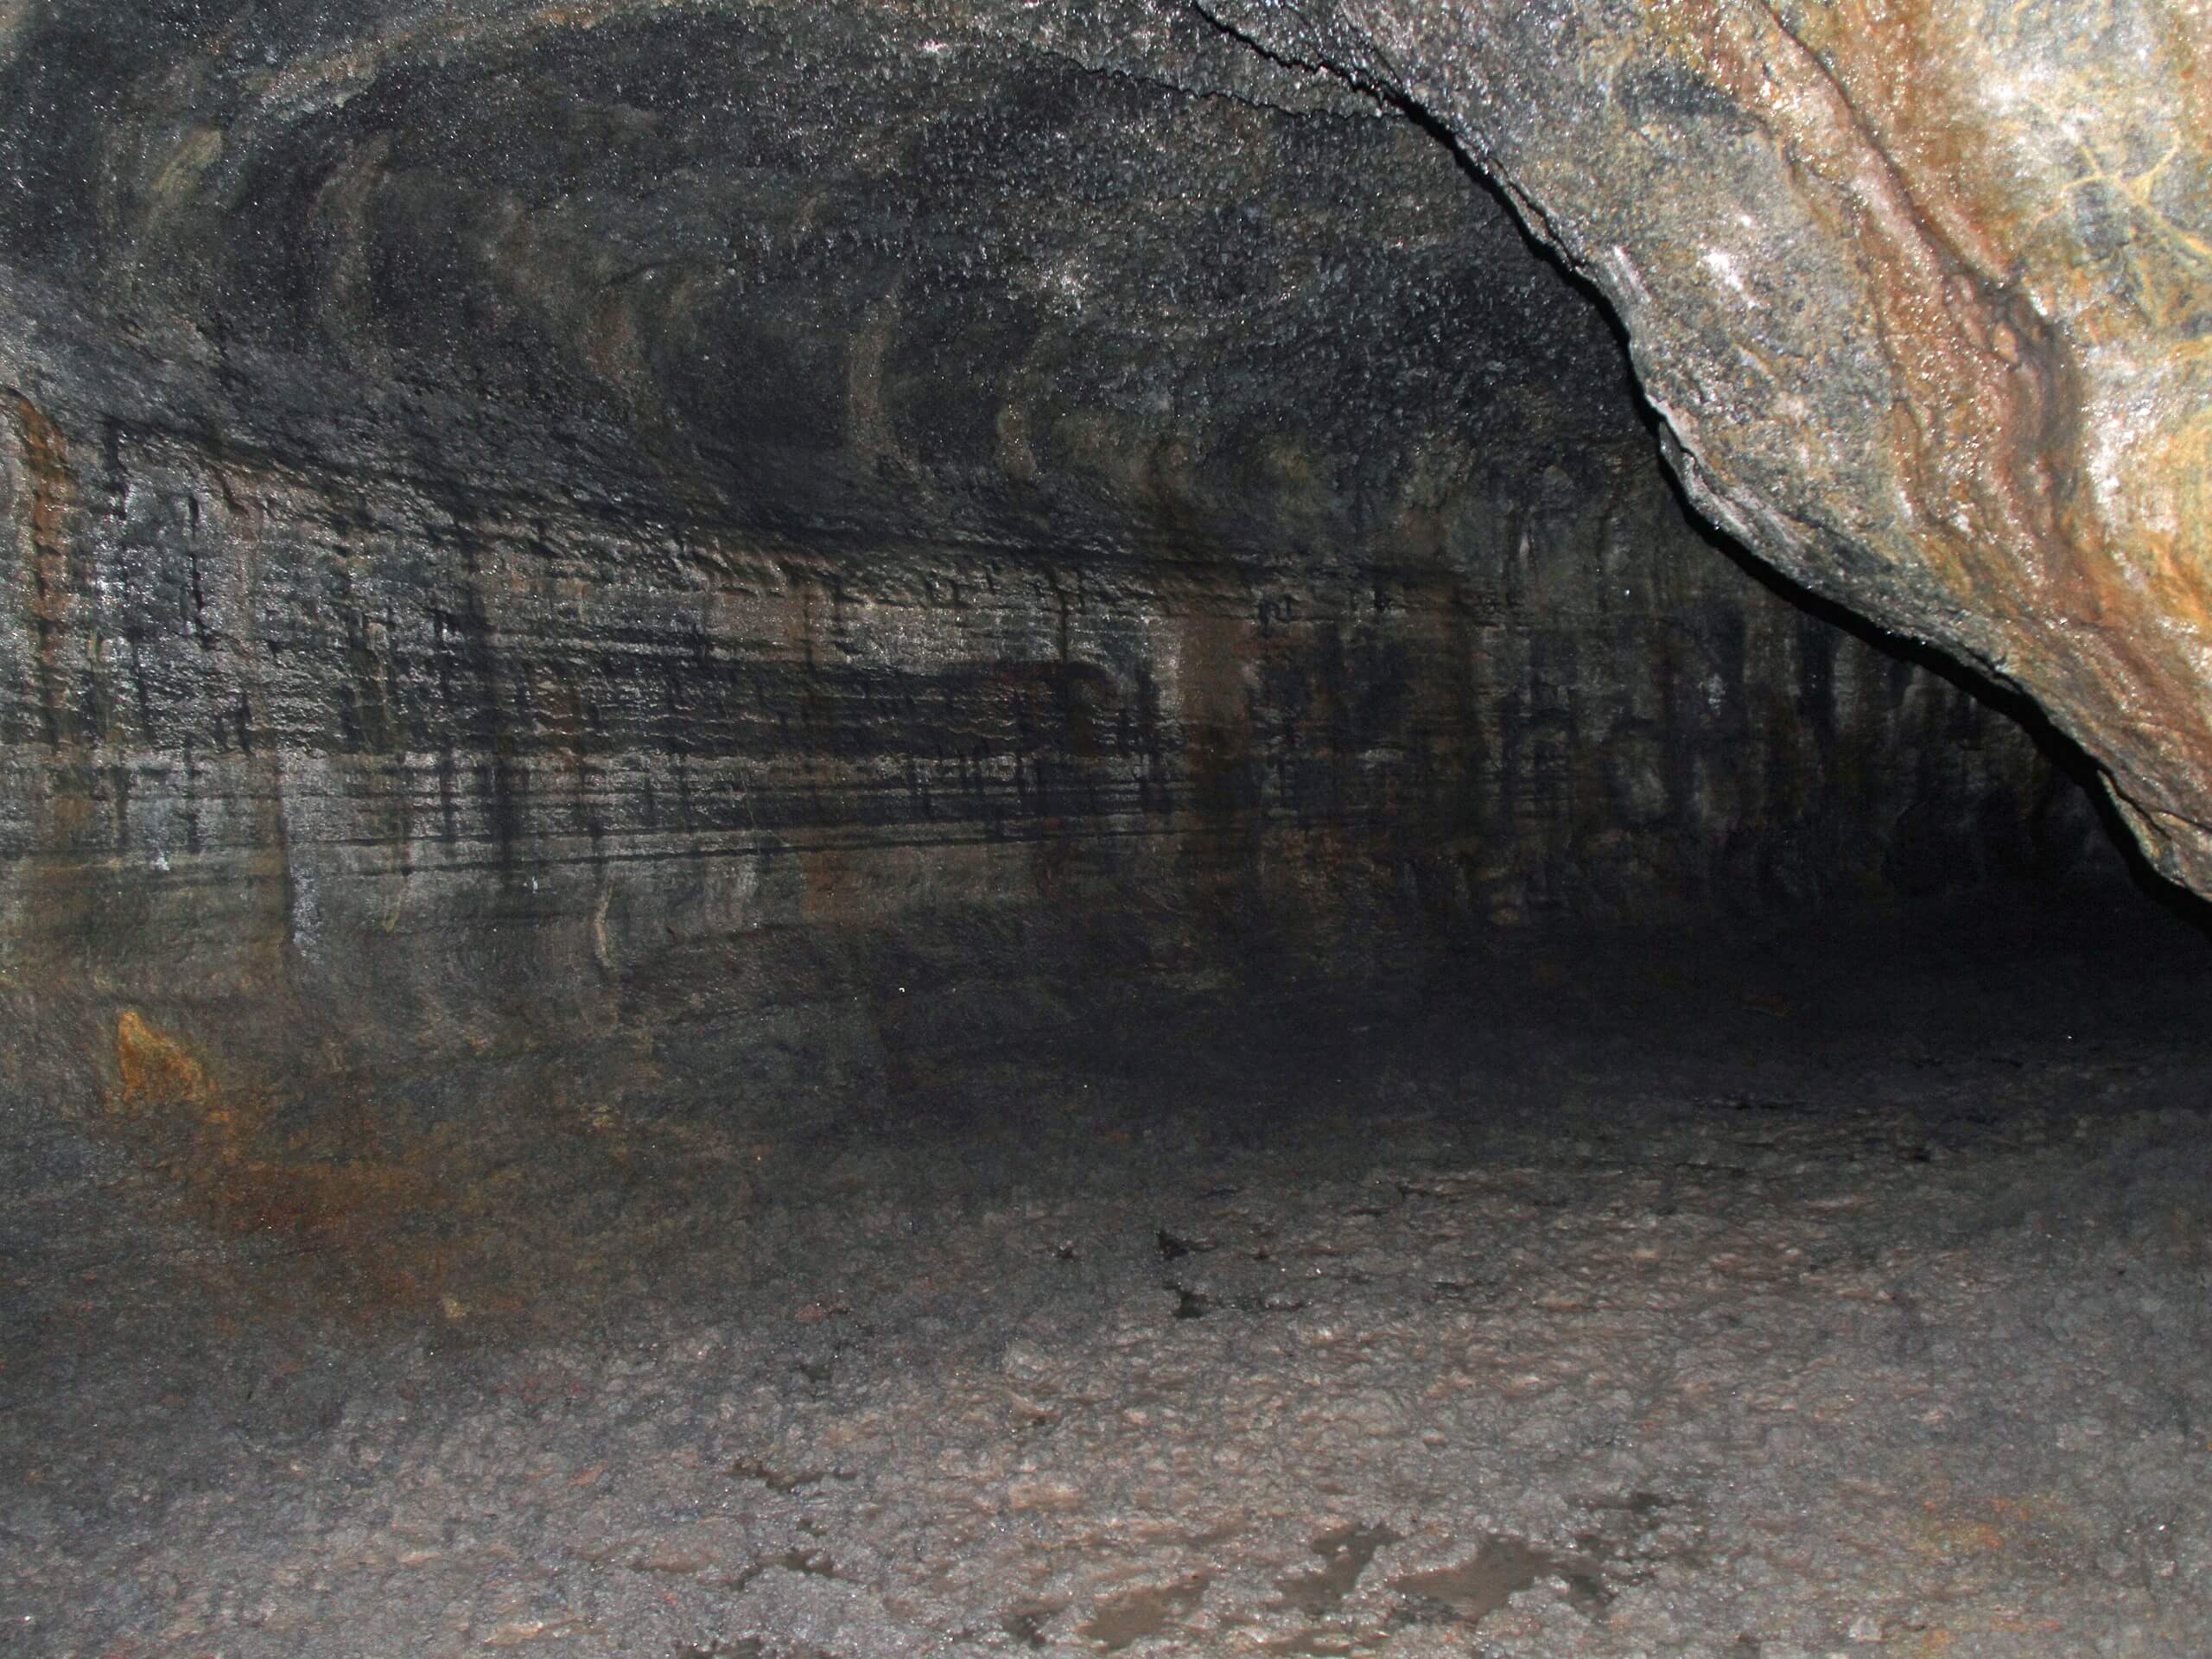 Ape Caves Trail